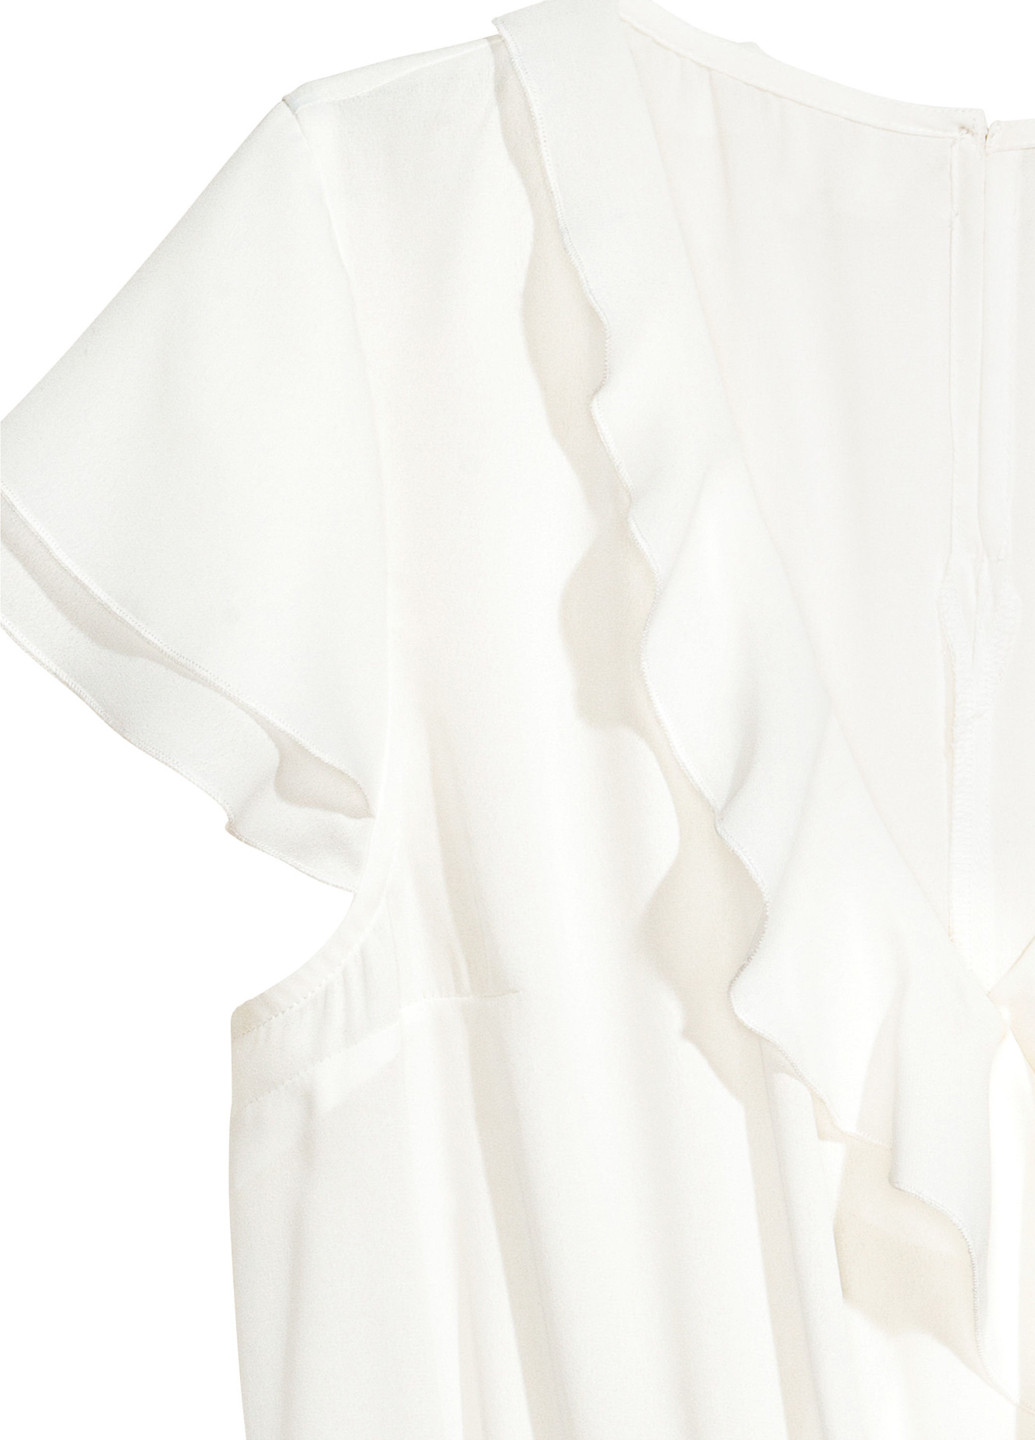 Комбинезон H&M комбинезон-шорты белый кэжуал